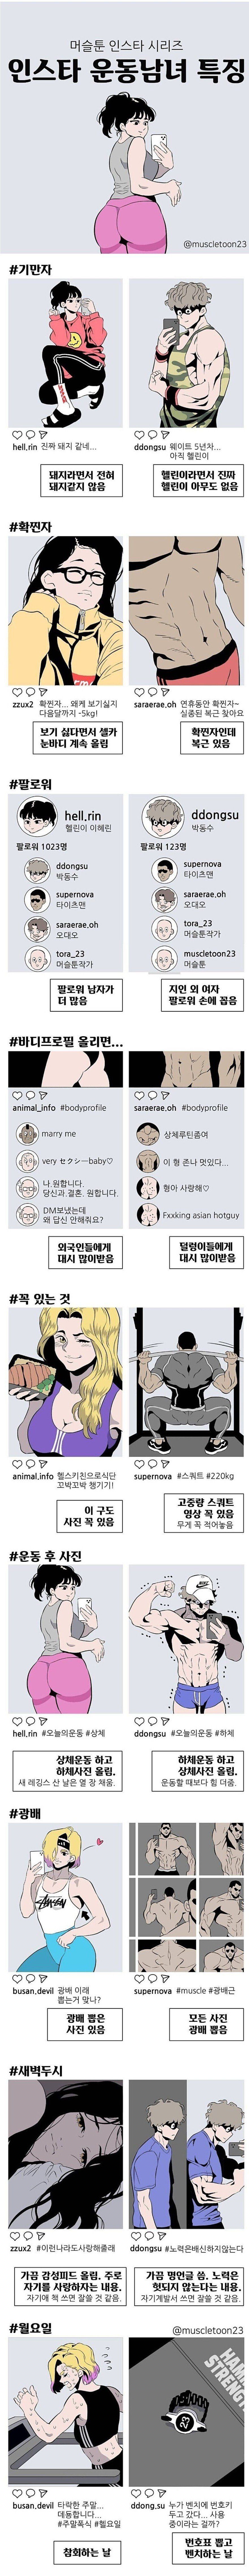 인스타 운동남녀 특 만화.jpg